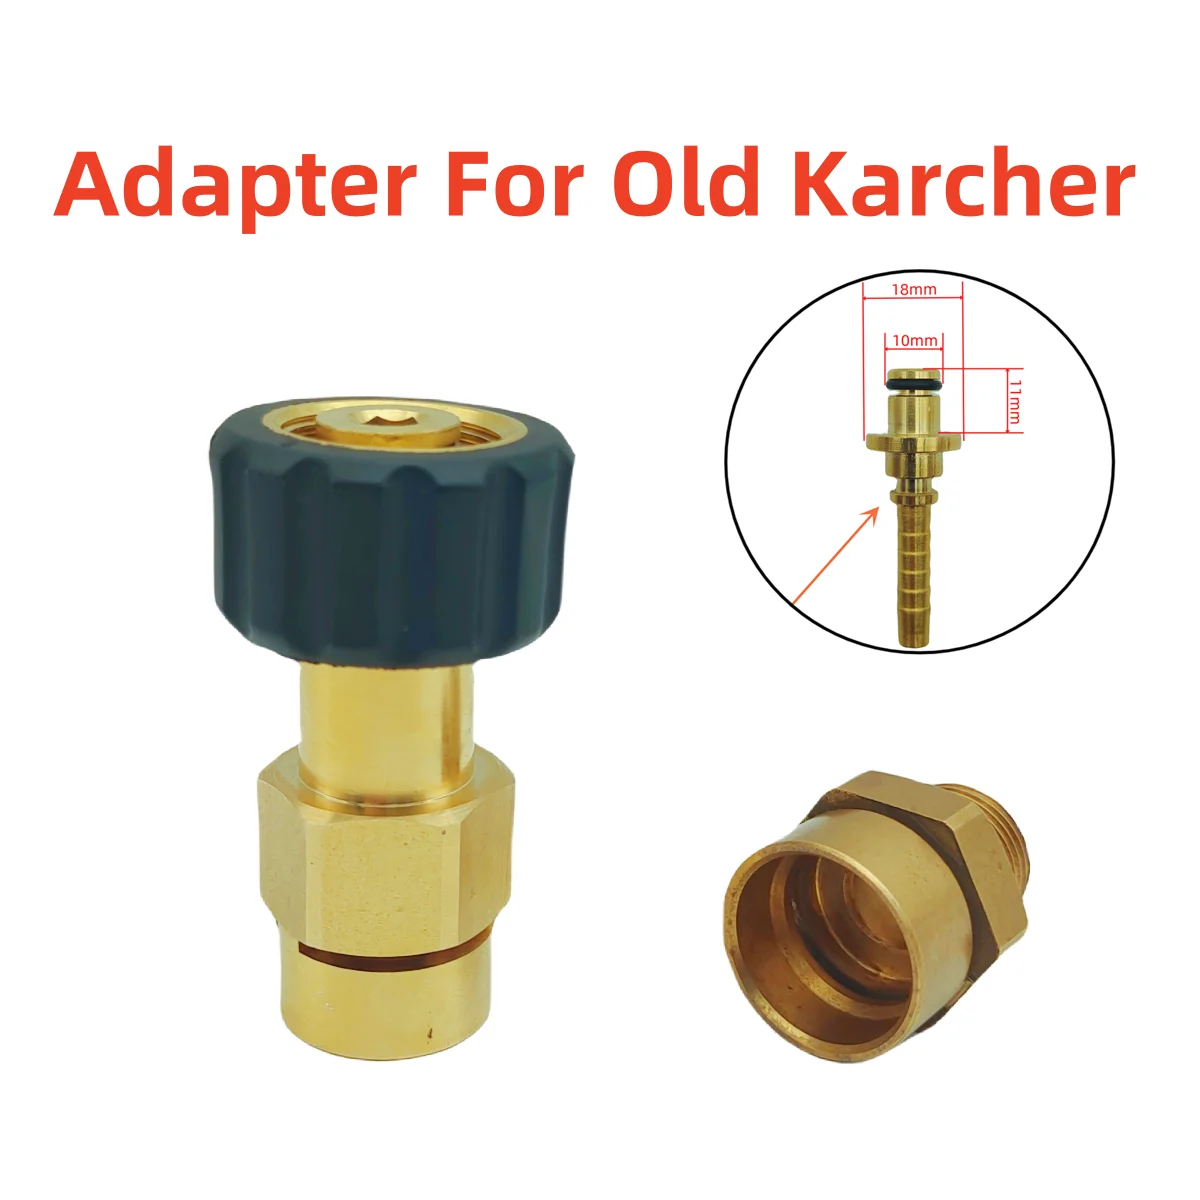 Karcher K2.14 Pressure Washer Demonstration 